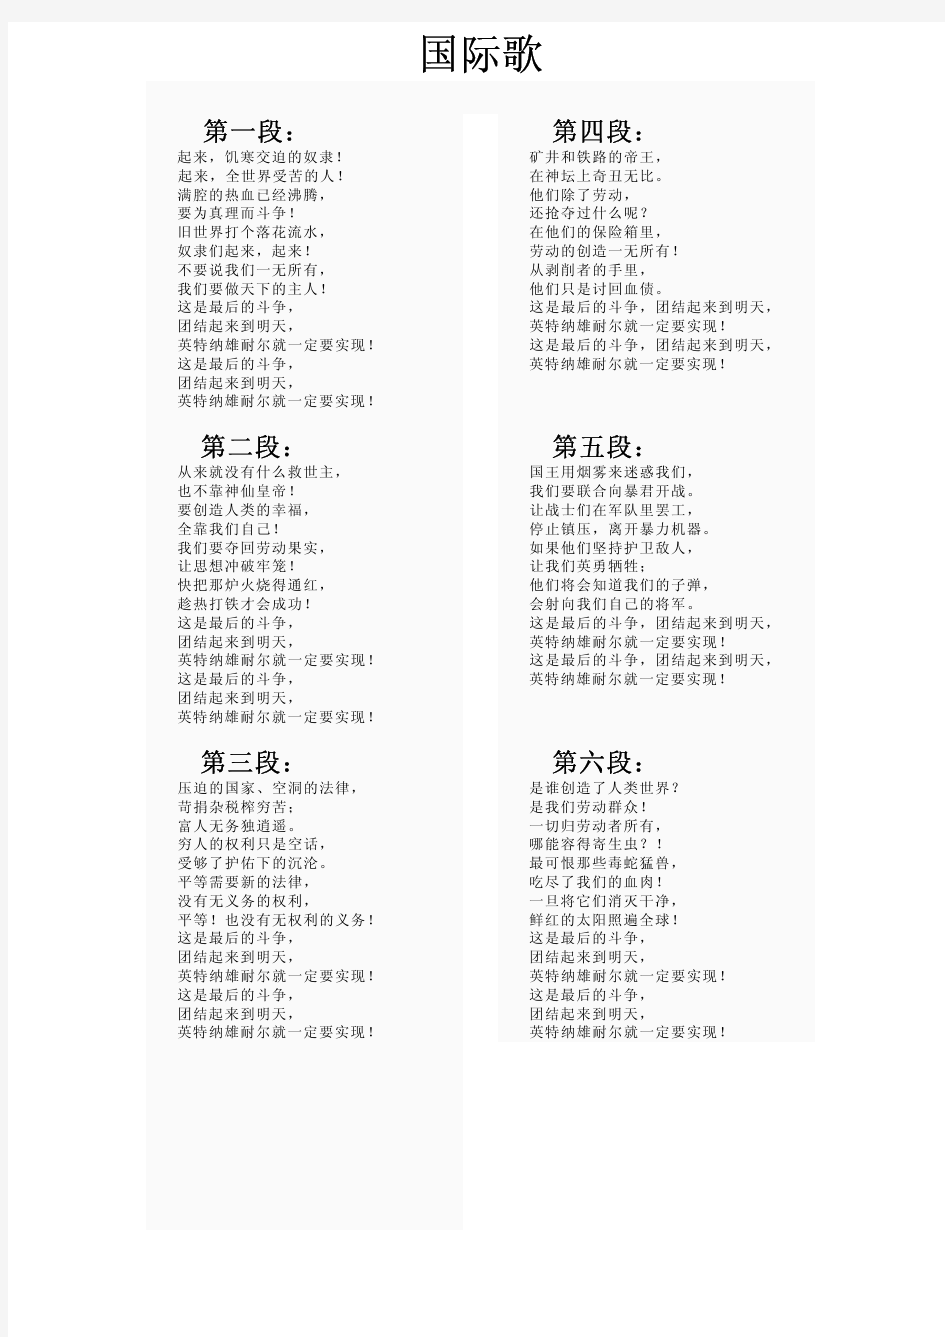 国际歌歌词(中文)